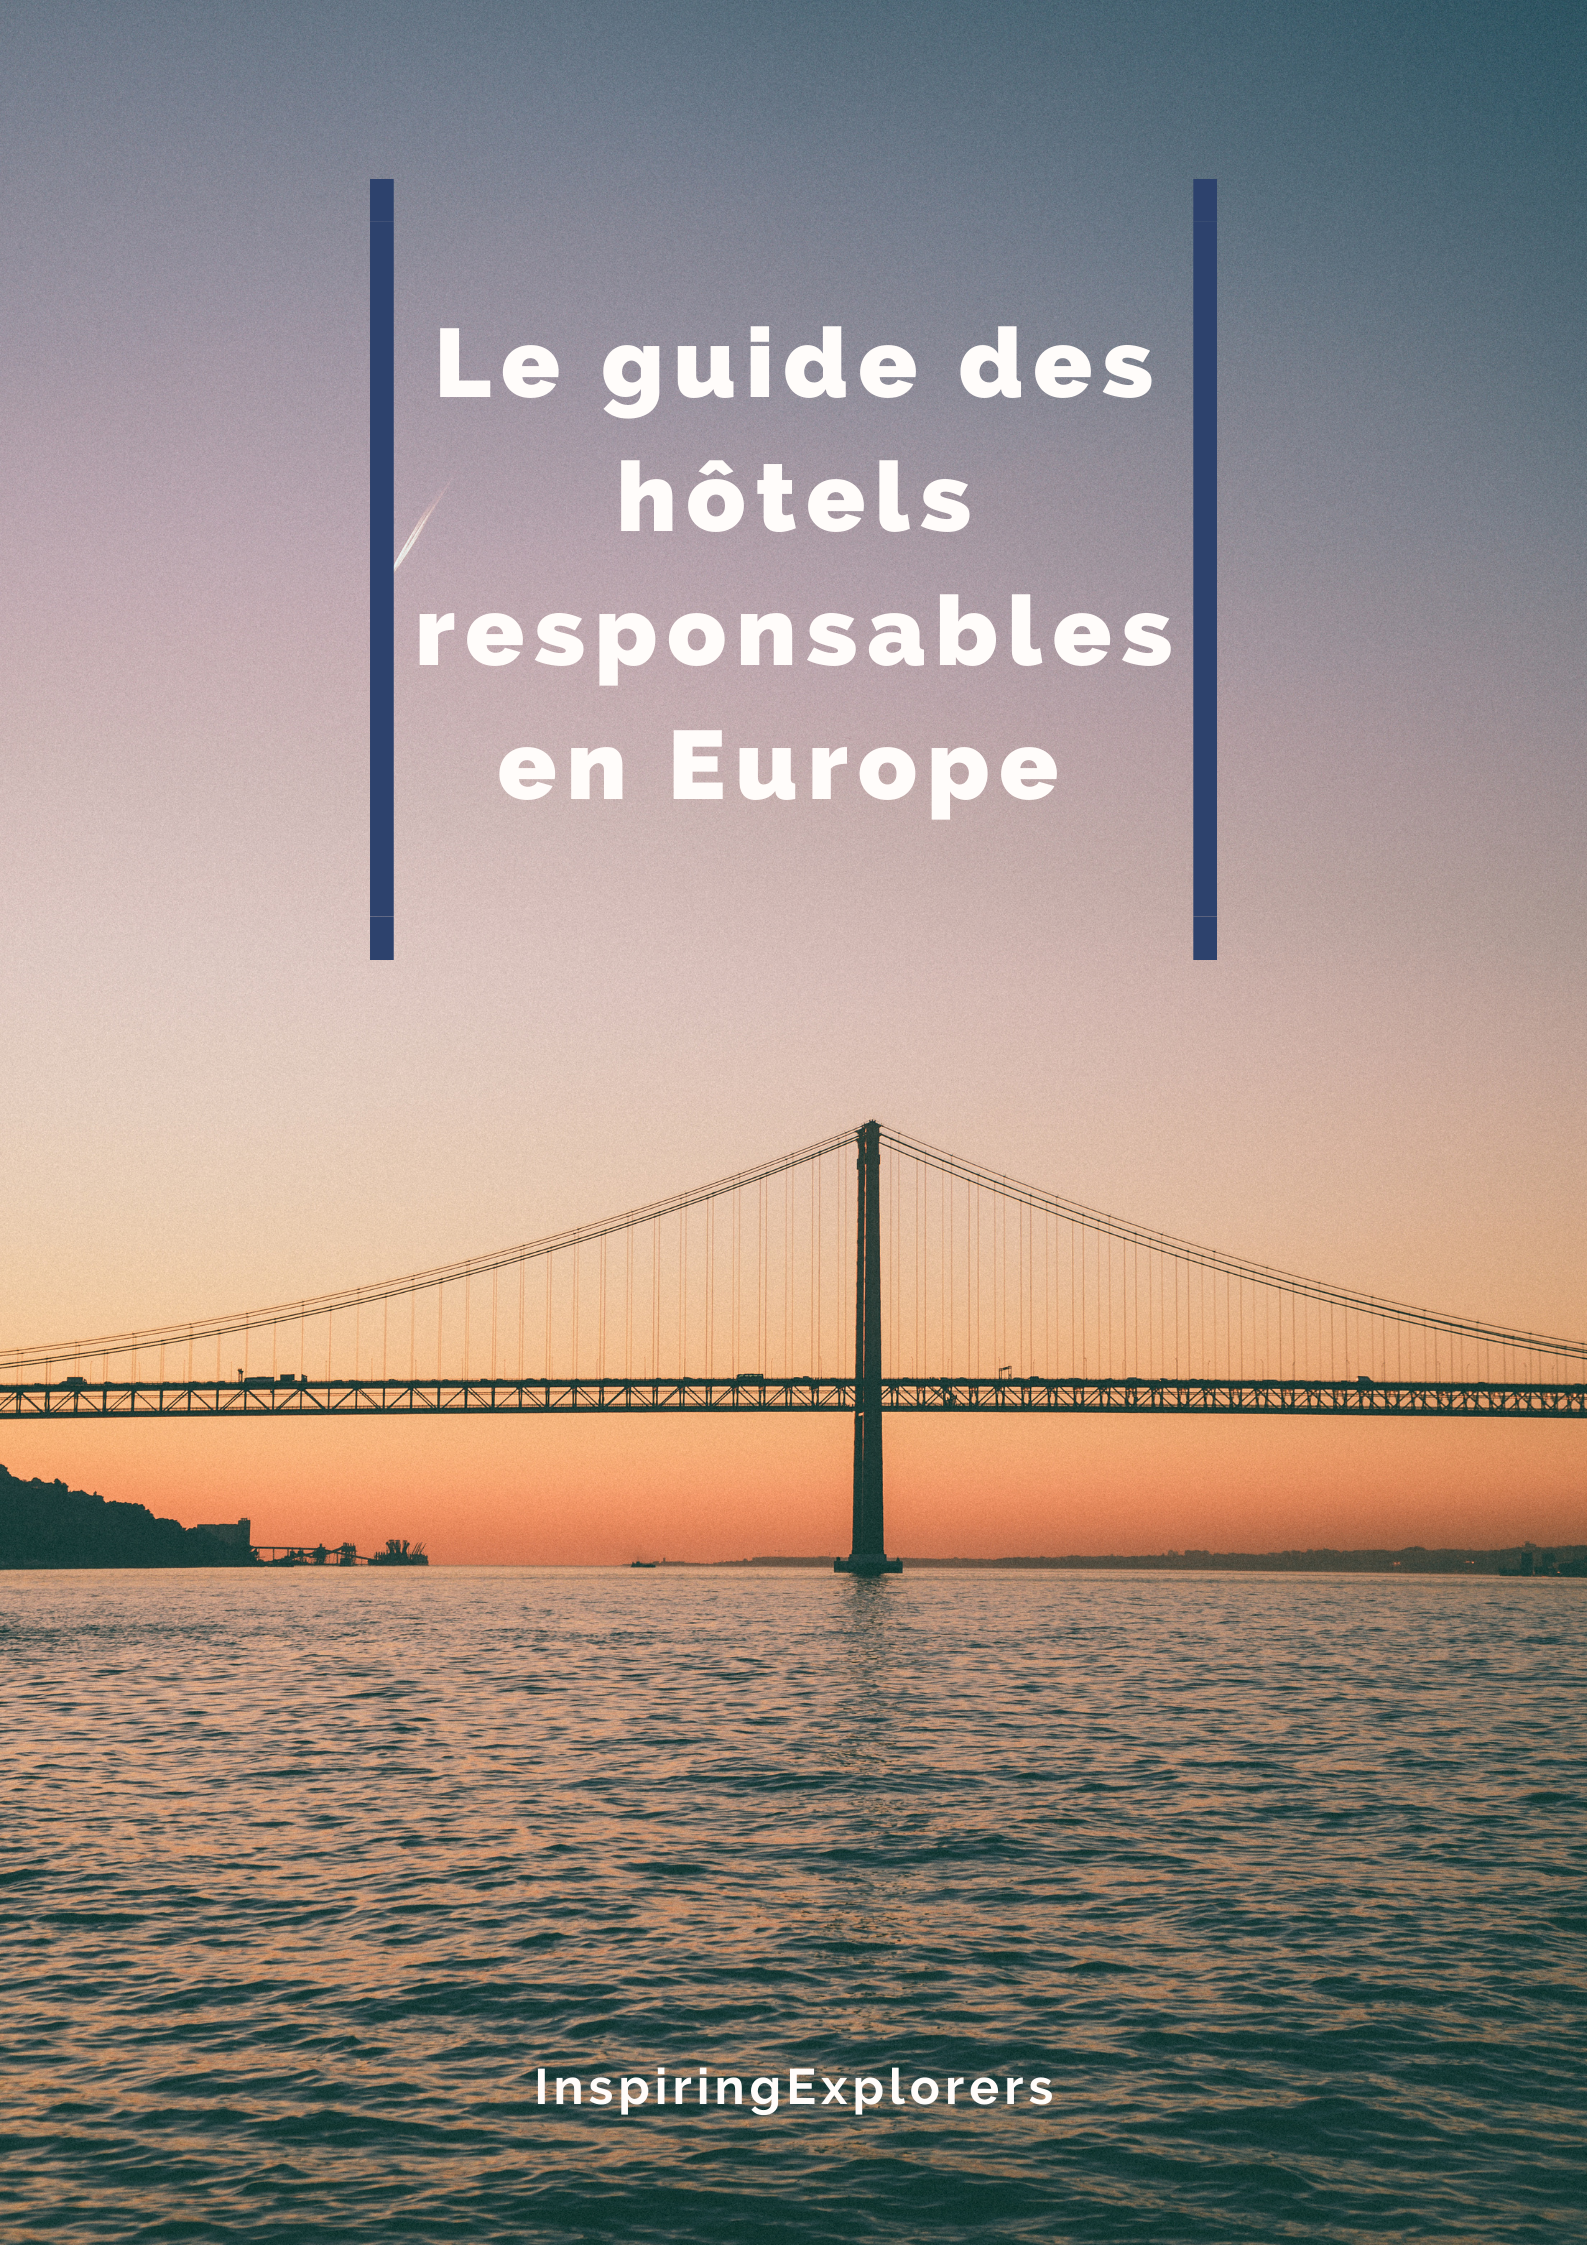 Le guide des hôtels responsables en Europe